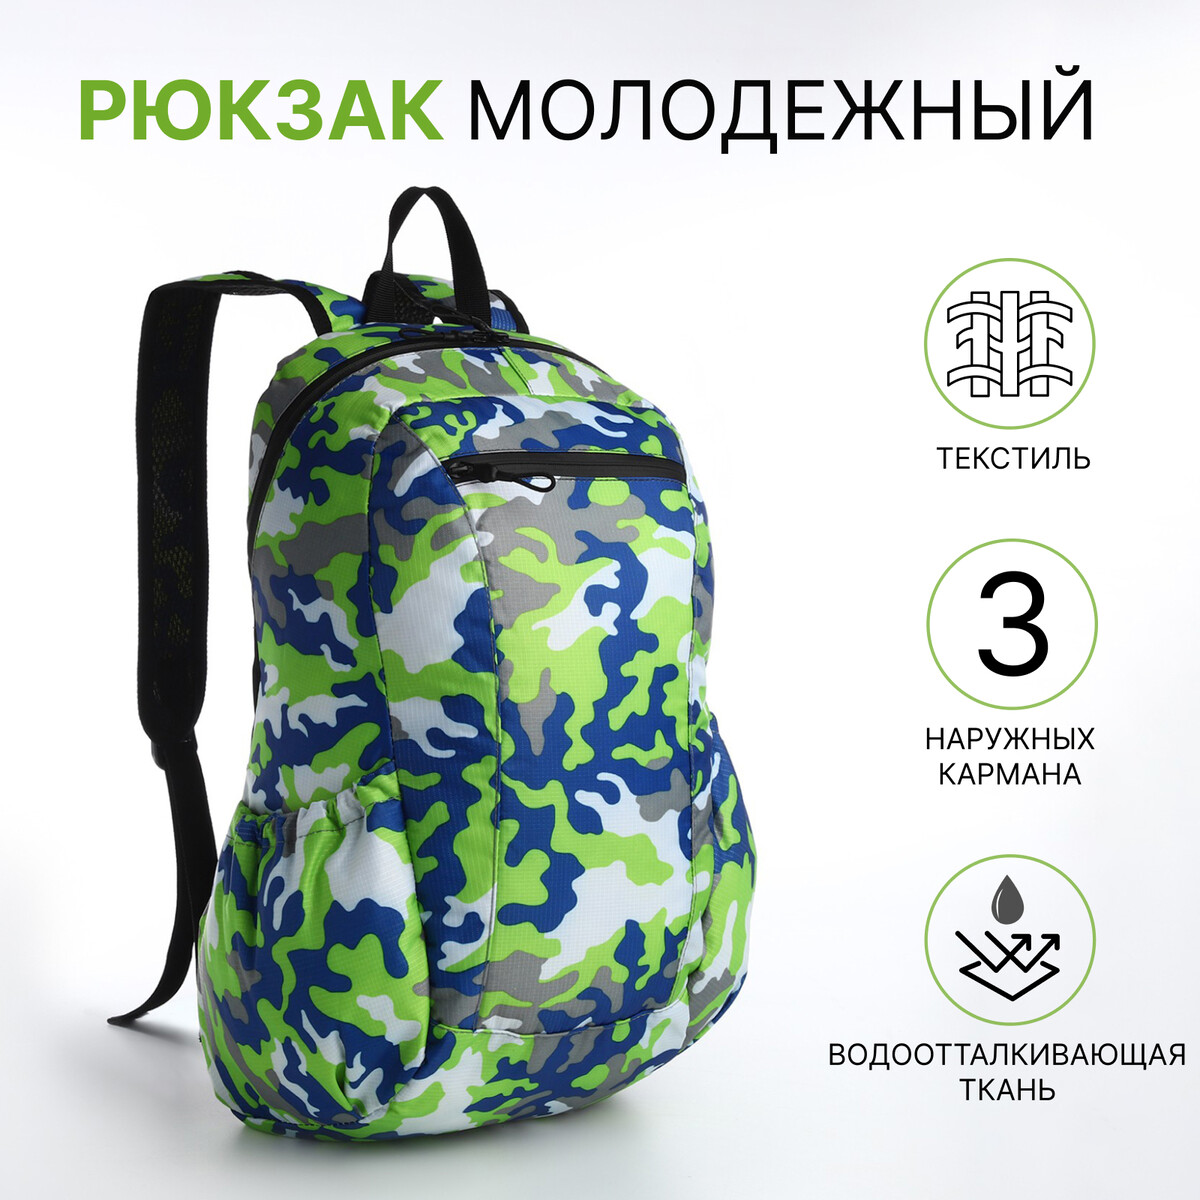 Рюкзак молодежный, водонепроницаемый на молнии, 3 кармана, цвет зеленый